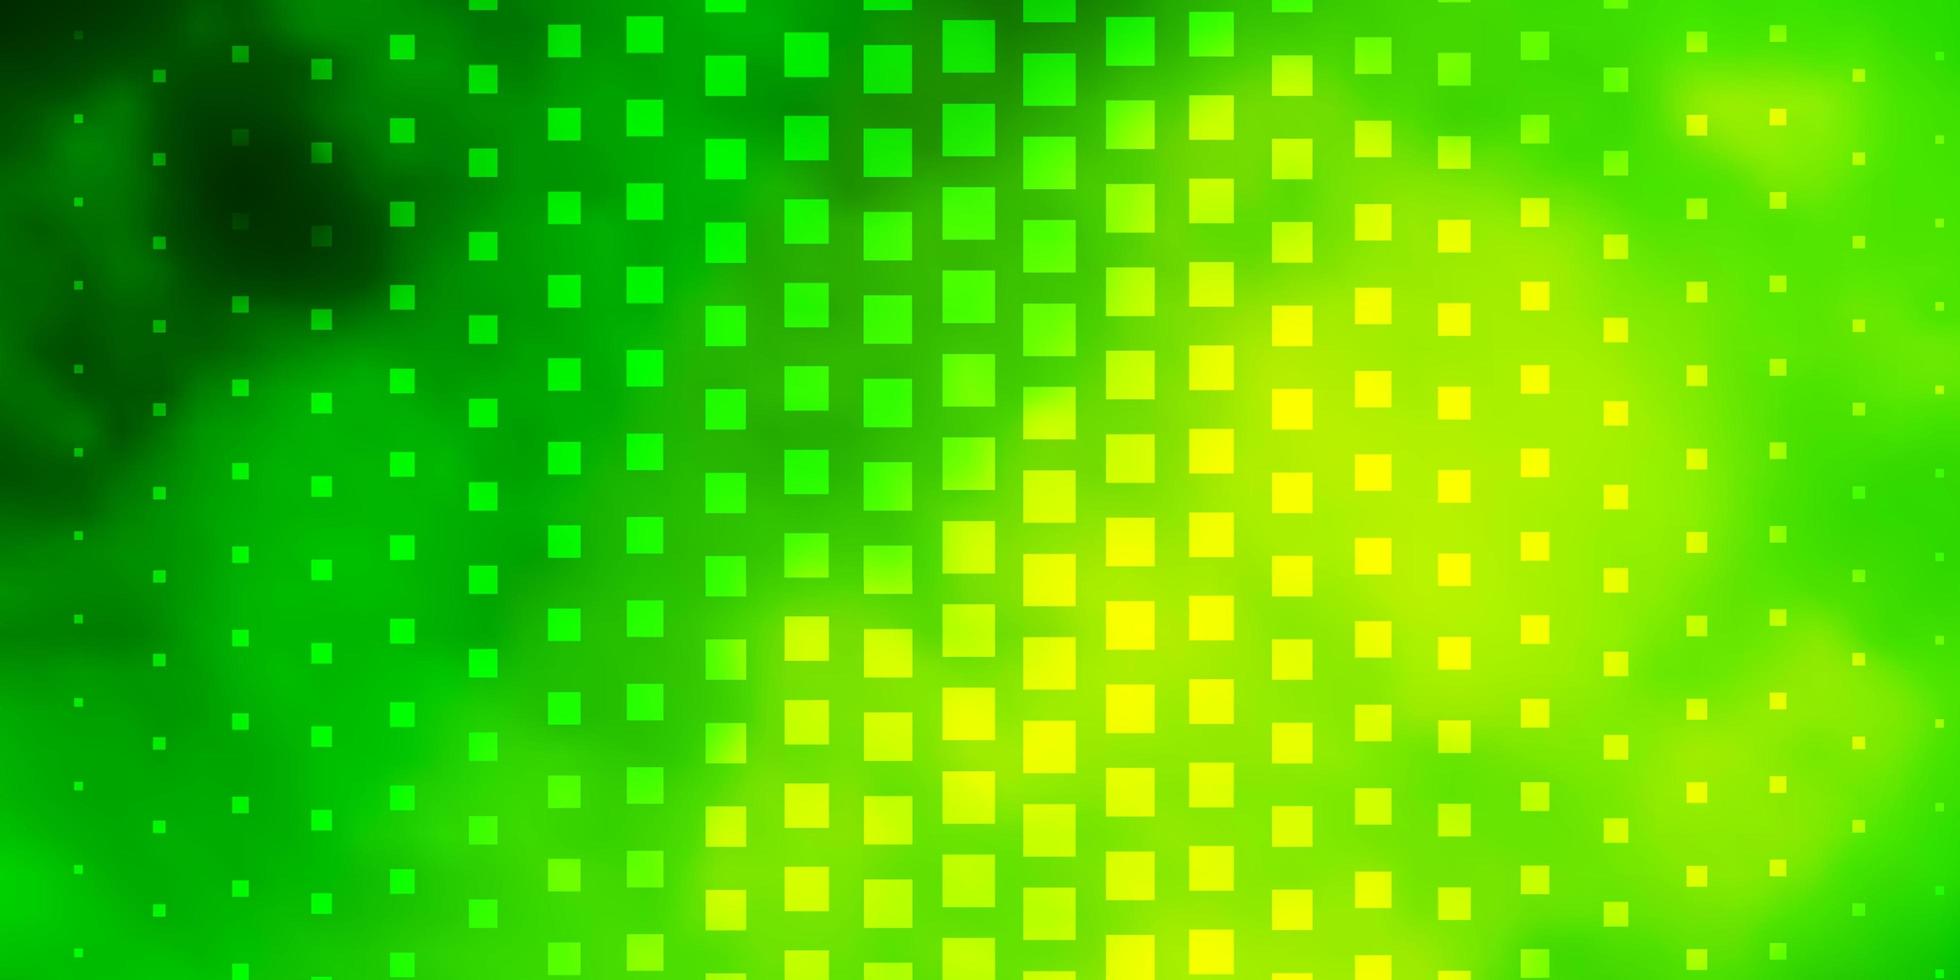 layout de vetor verde e amarelo claro com linhas, retângulos. ilustração colorida com retângulos gradientes e quadrados. padrão para sites, páginas de destino.